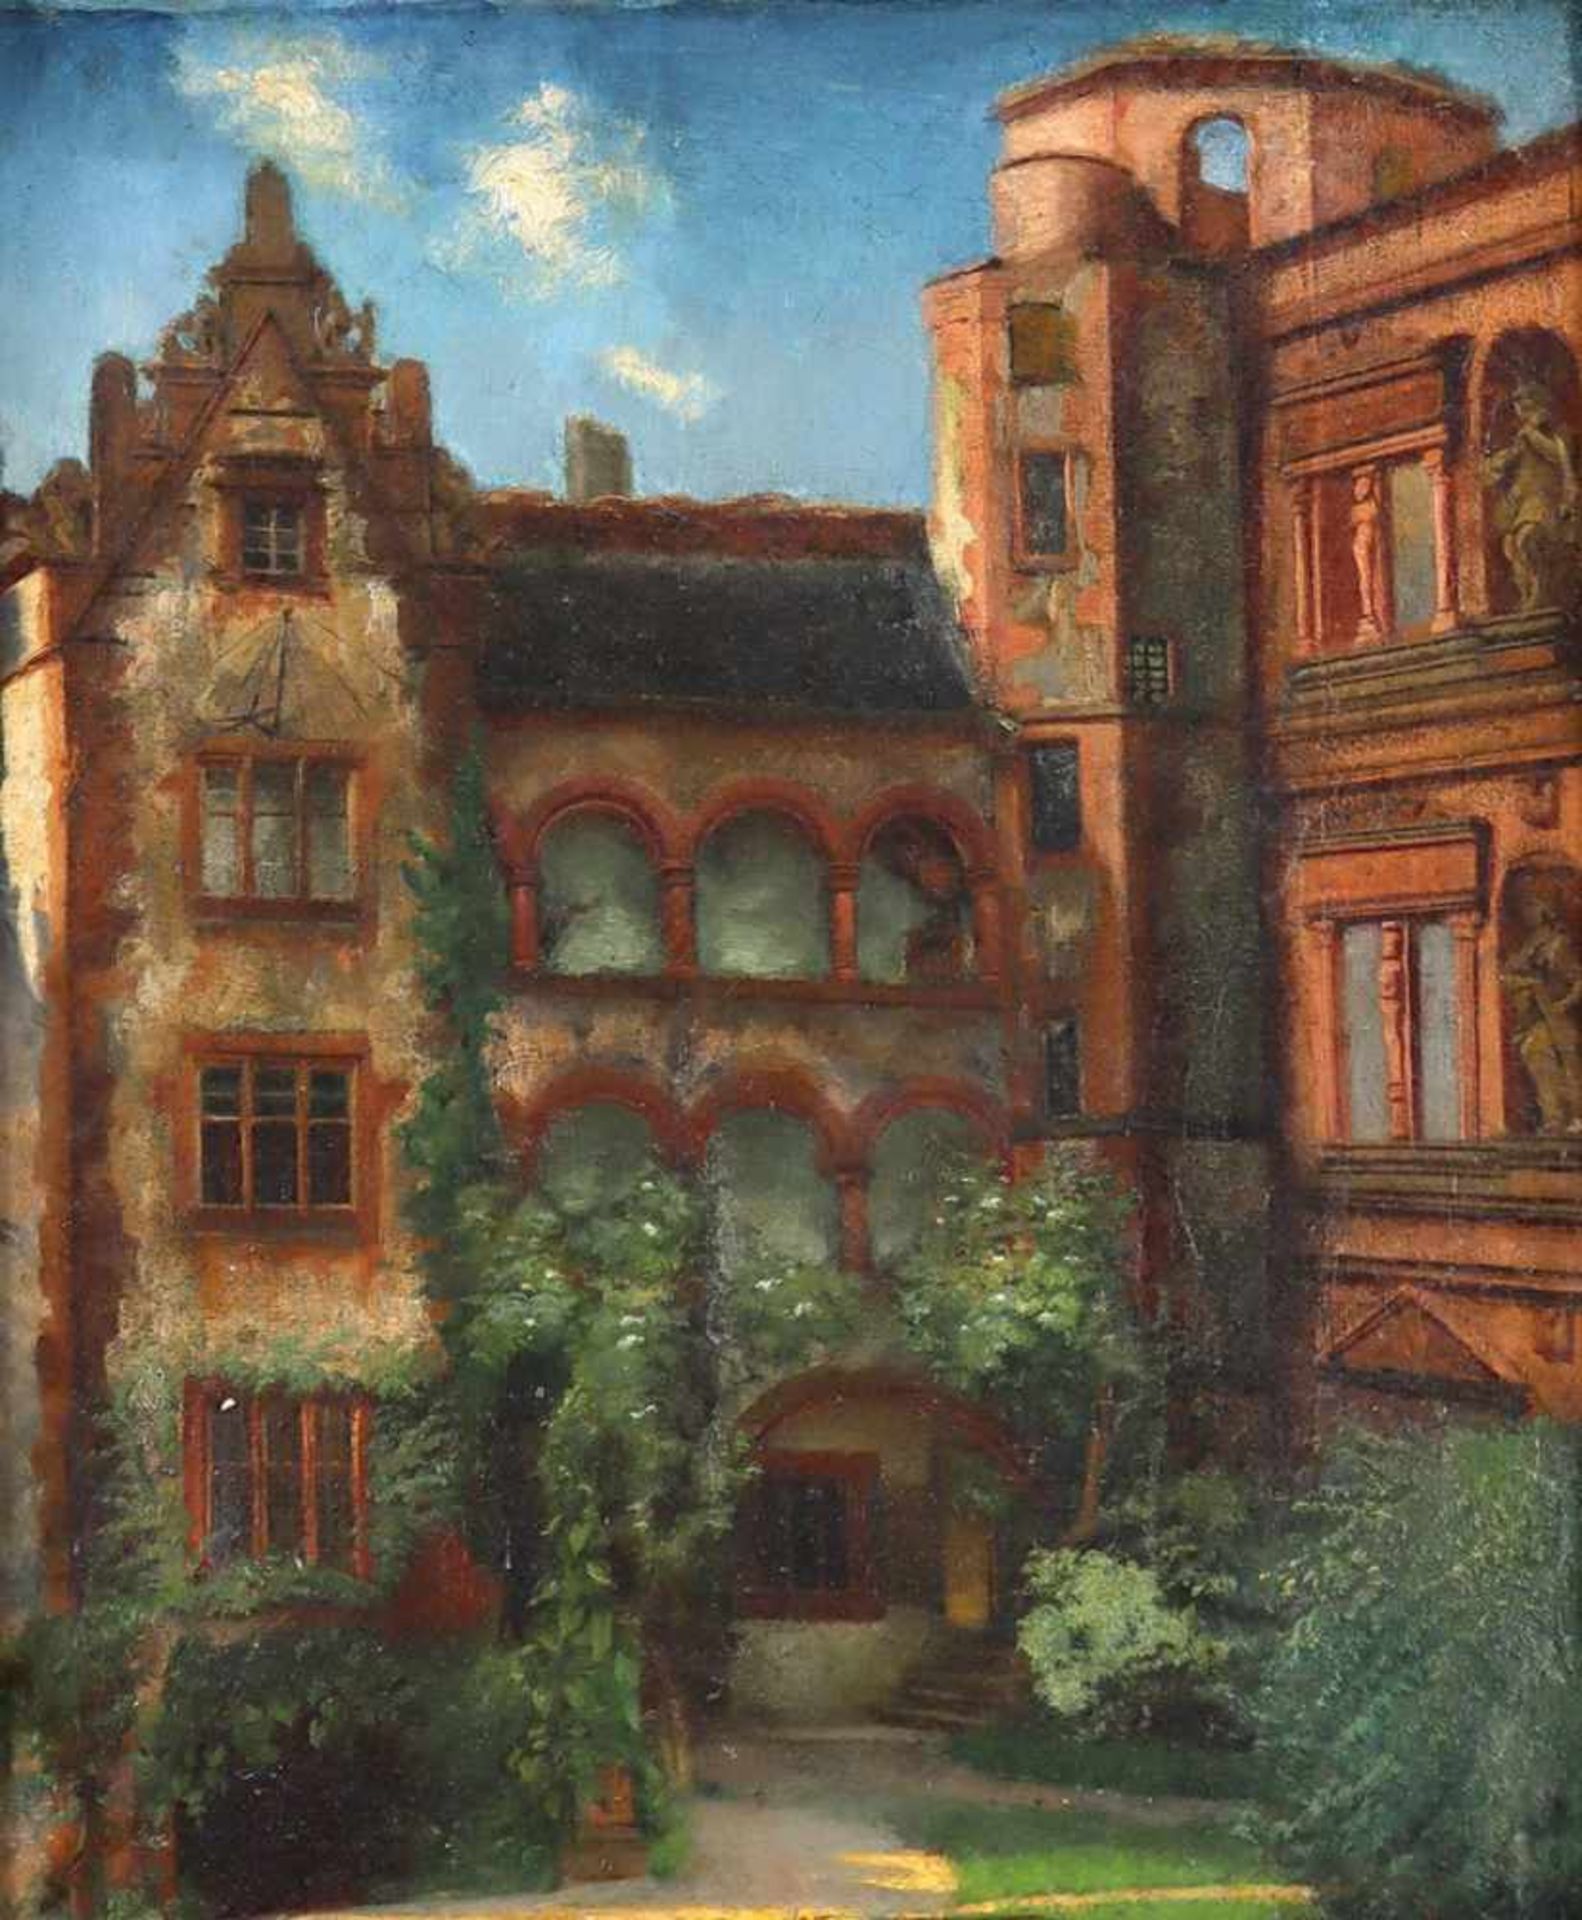 Heidelberg.Schlosshof mit dem gläsernen Saalbau. Öl auf Lwd. von Rugg, wohl 1844. 41 x 33 cm. Unt.